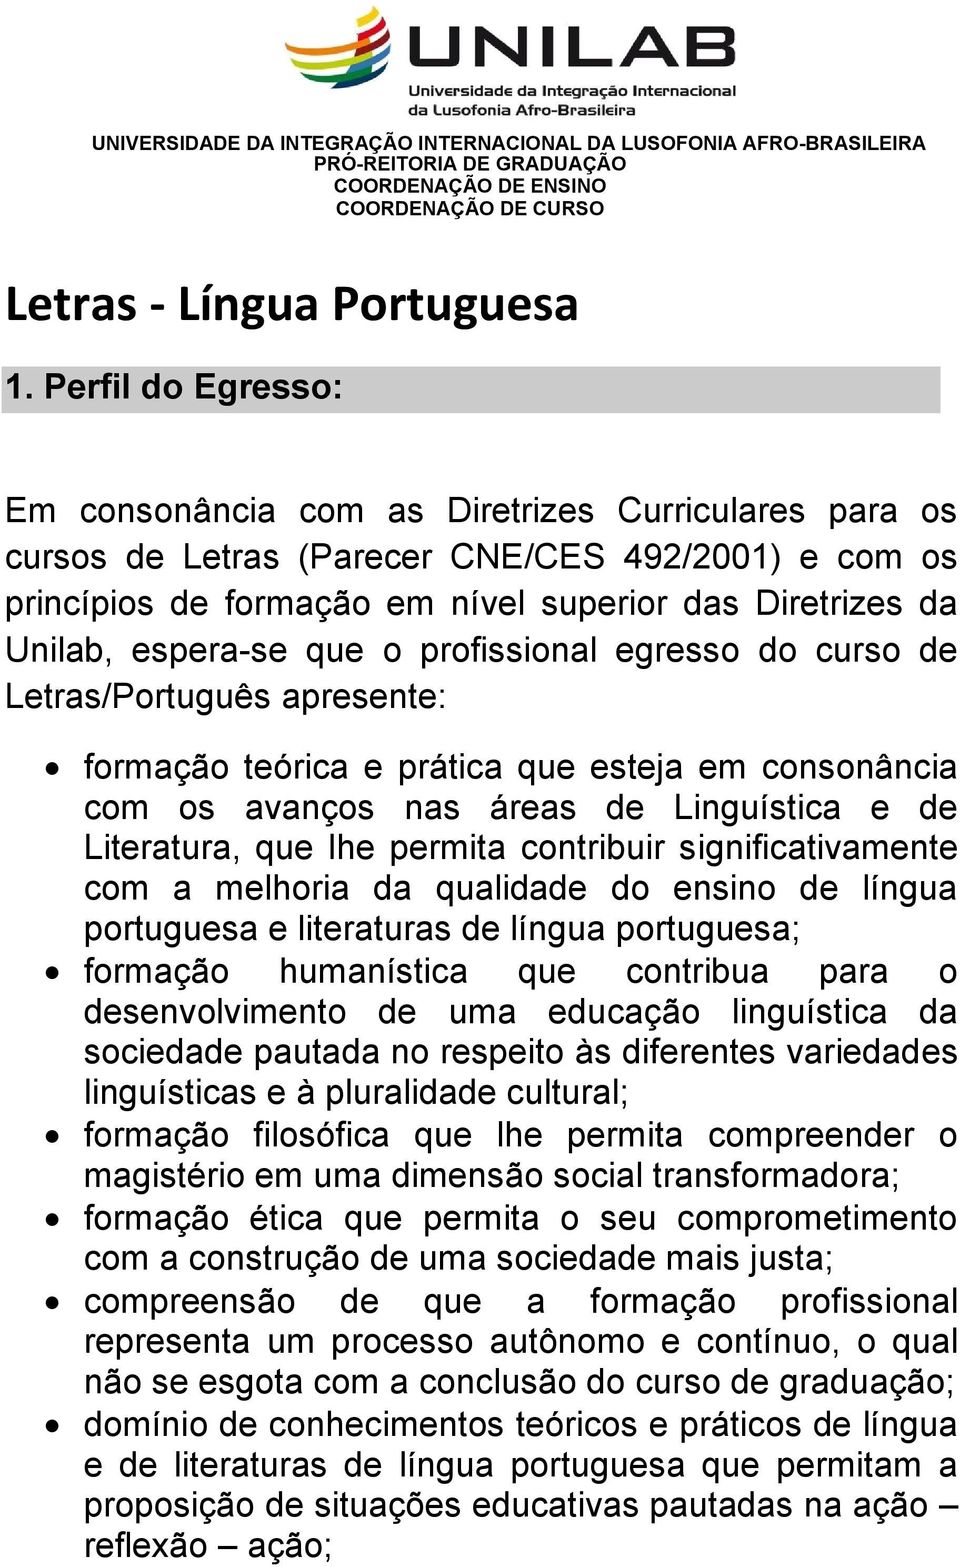 espera-se que o profissional egresso do curso de Letras/Português apresente: formação teórica e prática que esteja em consonância com os avanços nas áreas de Linguística e de Literatura, que lhe